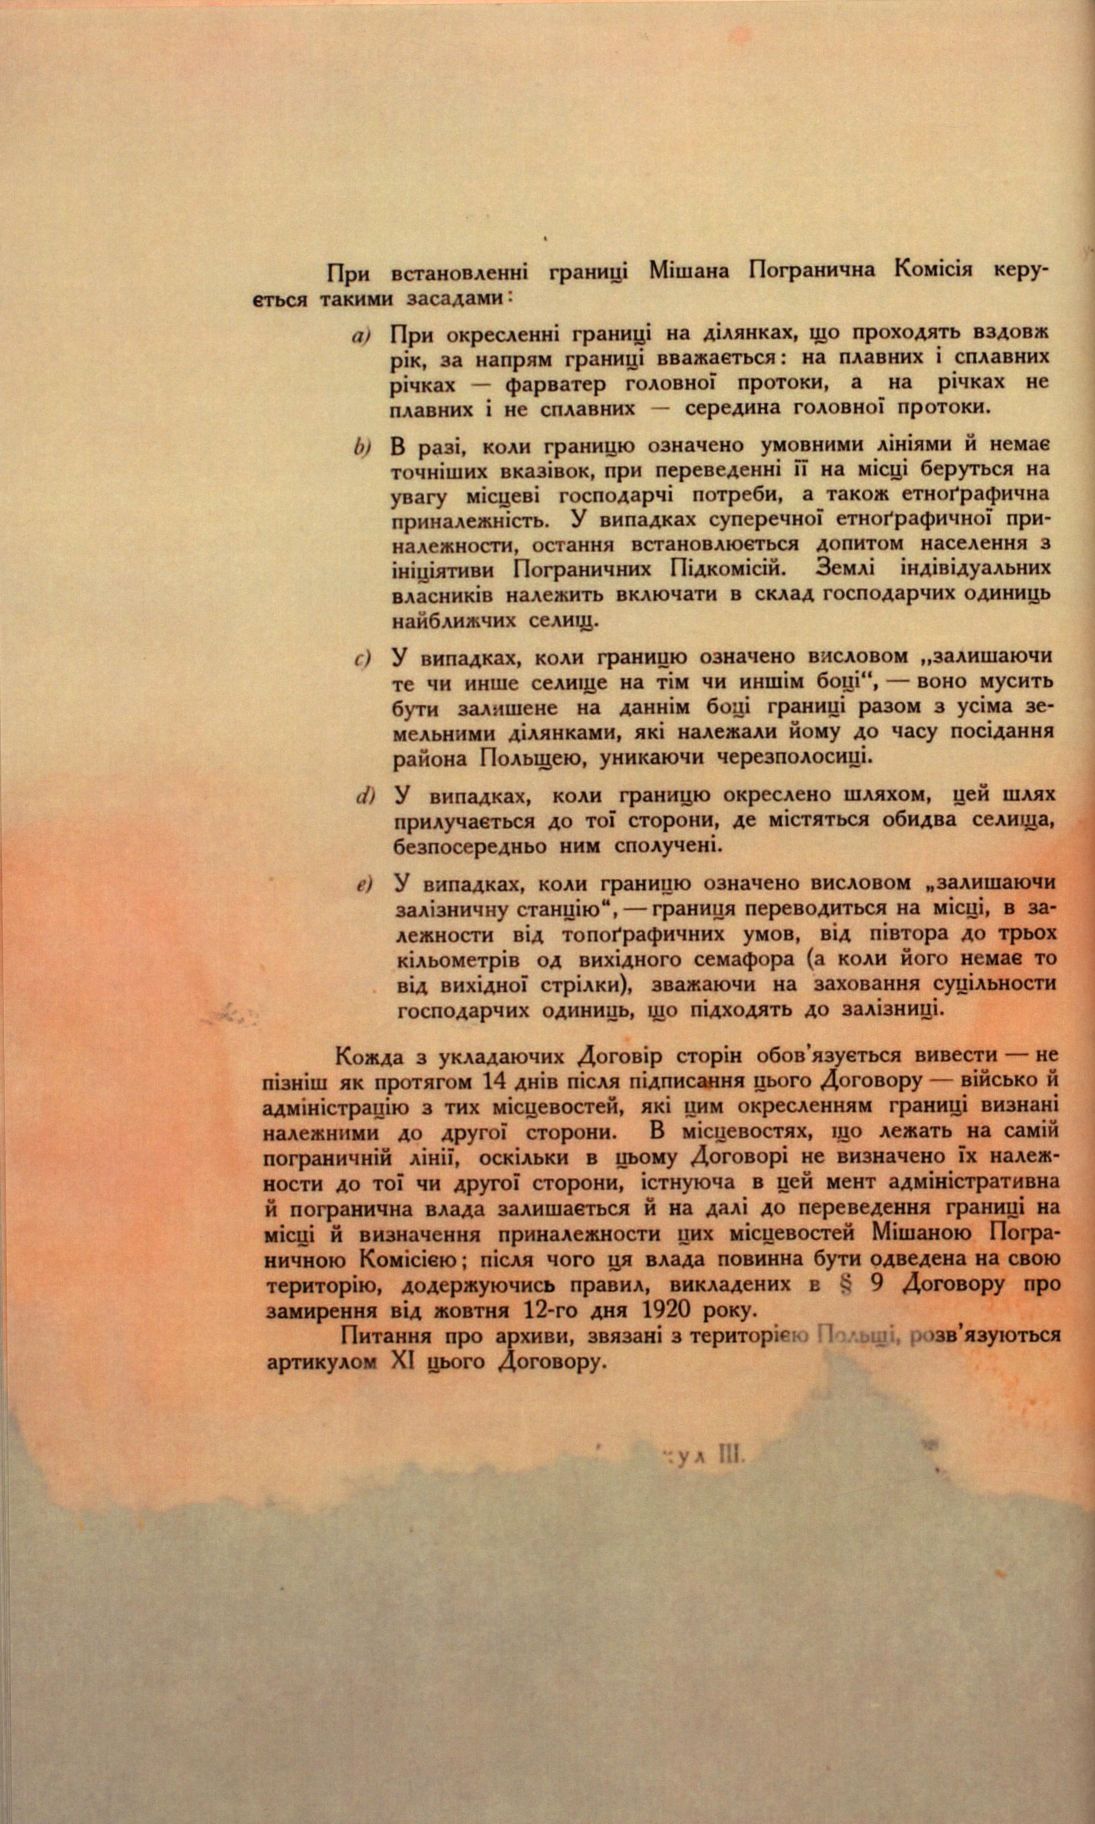 Traktat Pokoju między Polską a Rosją i Ukrainą podpisany w Rydze dnia 18 marca 1921 roku, s. 38, MSZ, sygn. 6739.